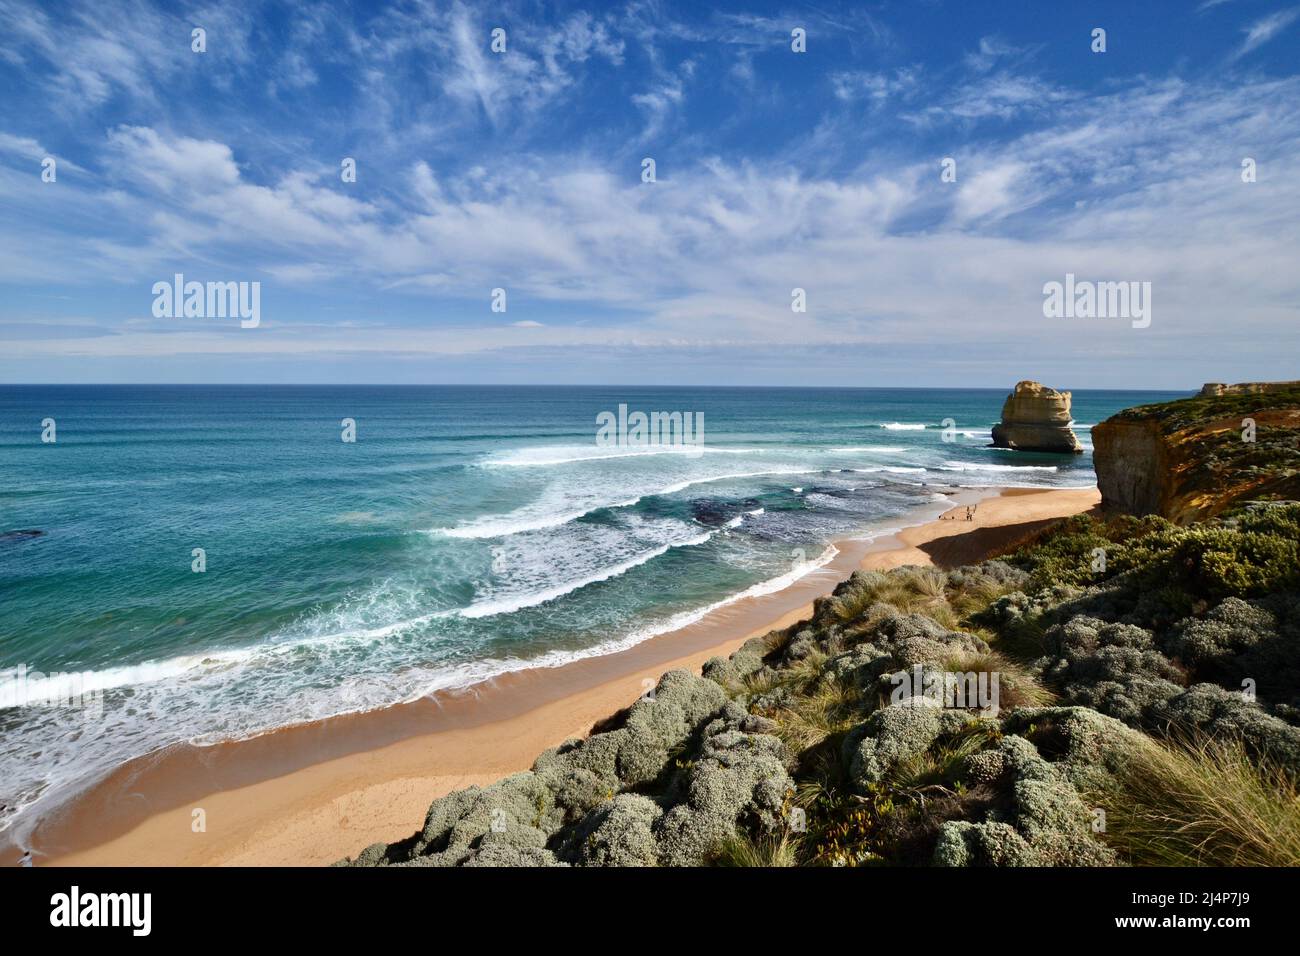 Panoramablick auf die viktorianische Küste in Australien an der Great Ocean Road mit wilder Brandung und Wellen, makellosem Sandstrand und Buschland an der Küste Stockfoto